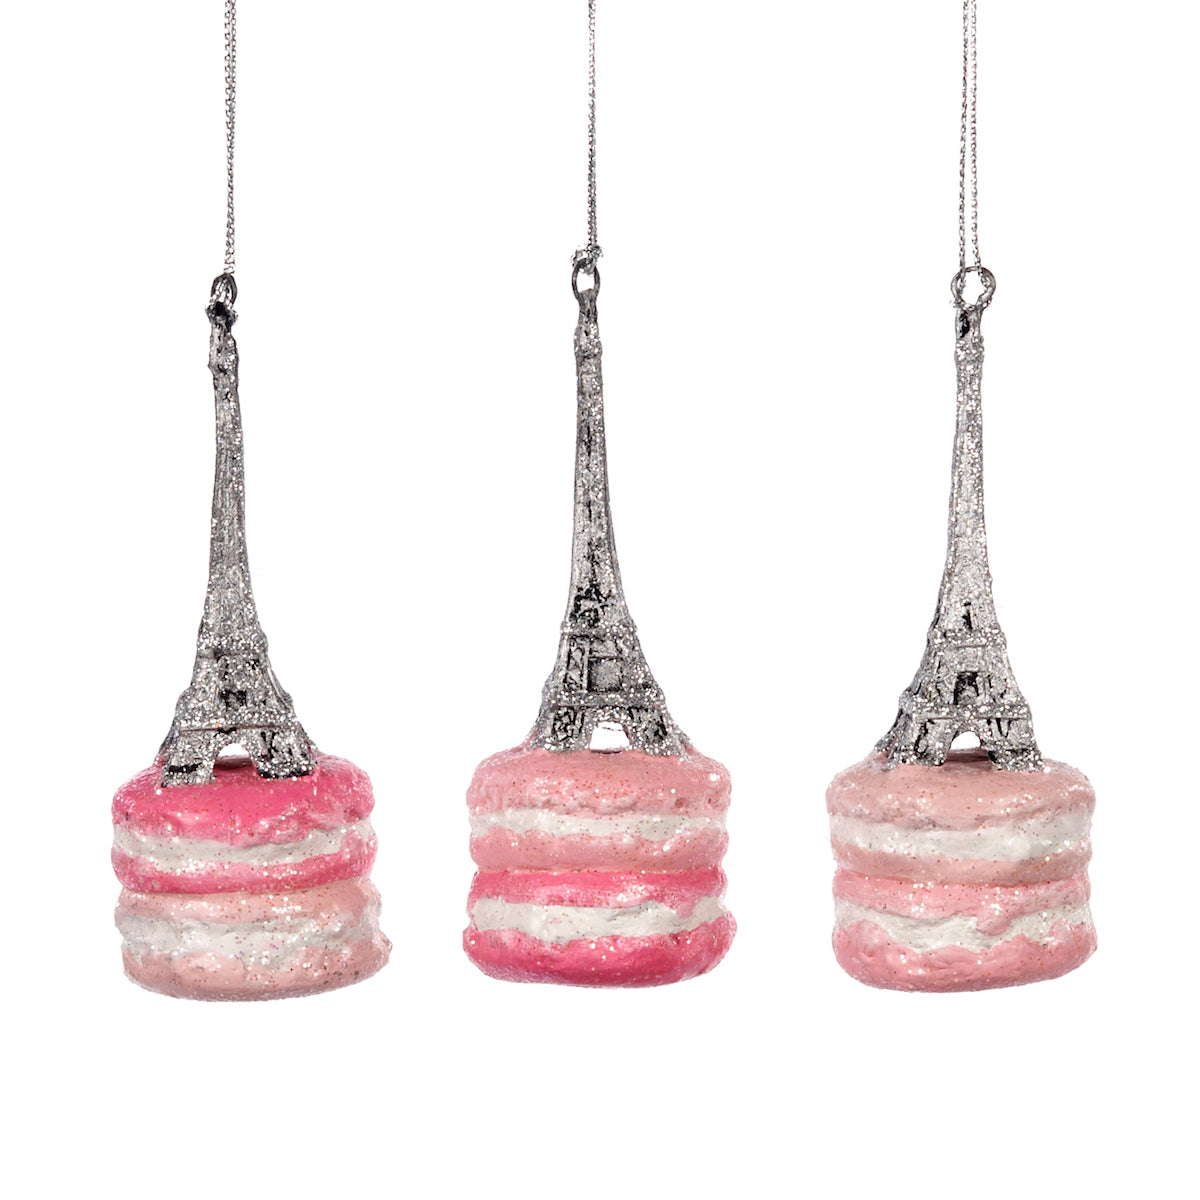 Hänger Macaron Eifel Tower pink/hellrosa - 11cm